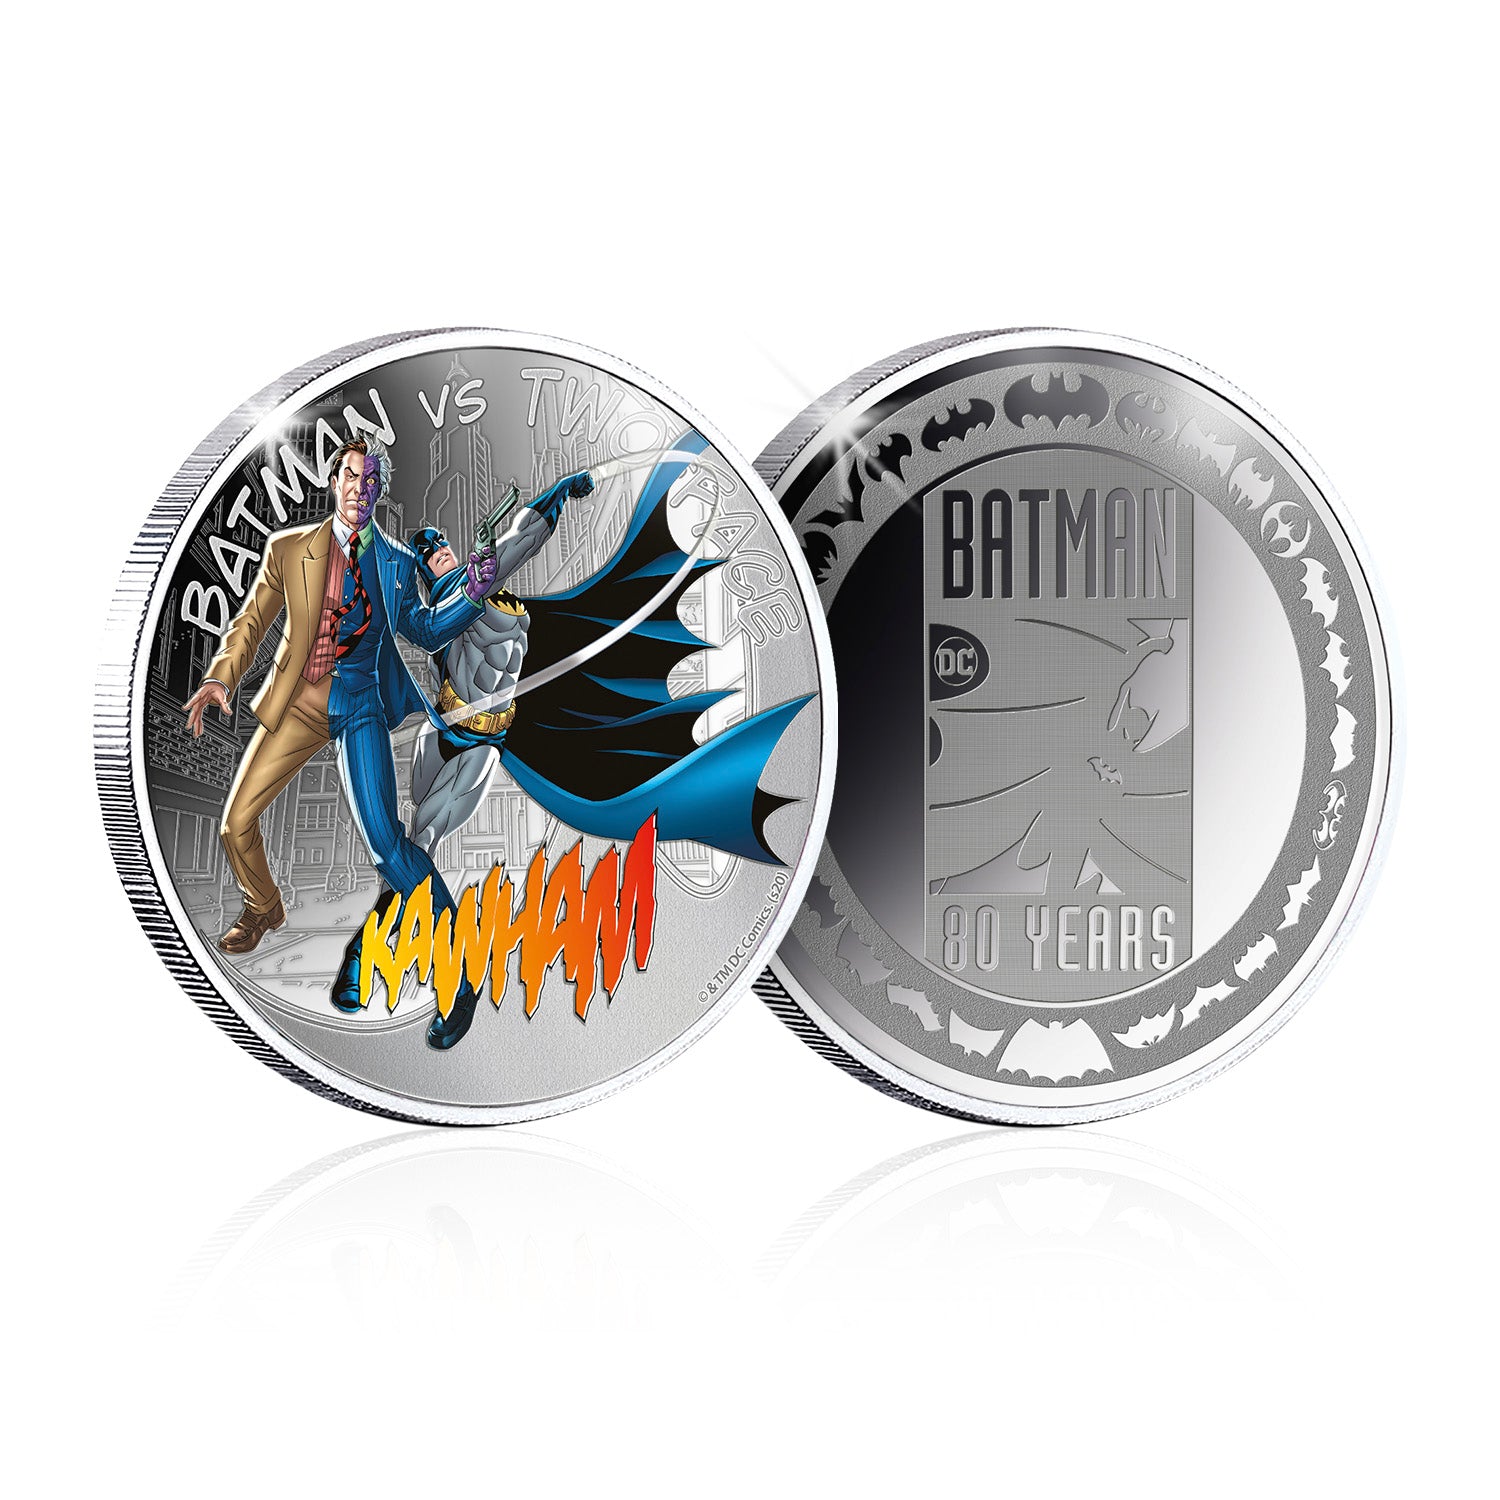 Batman vs Two-Face Silver-Plated Commemorative